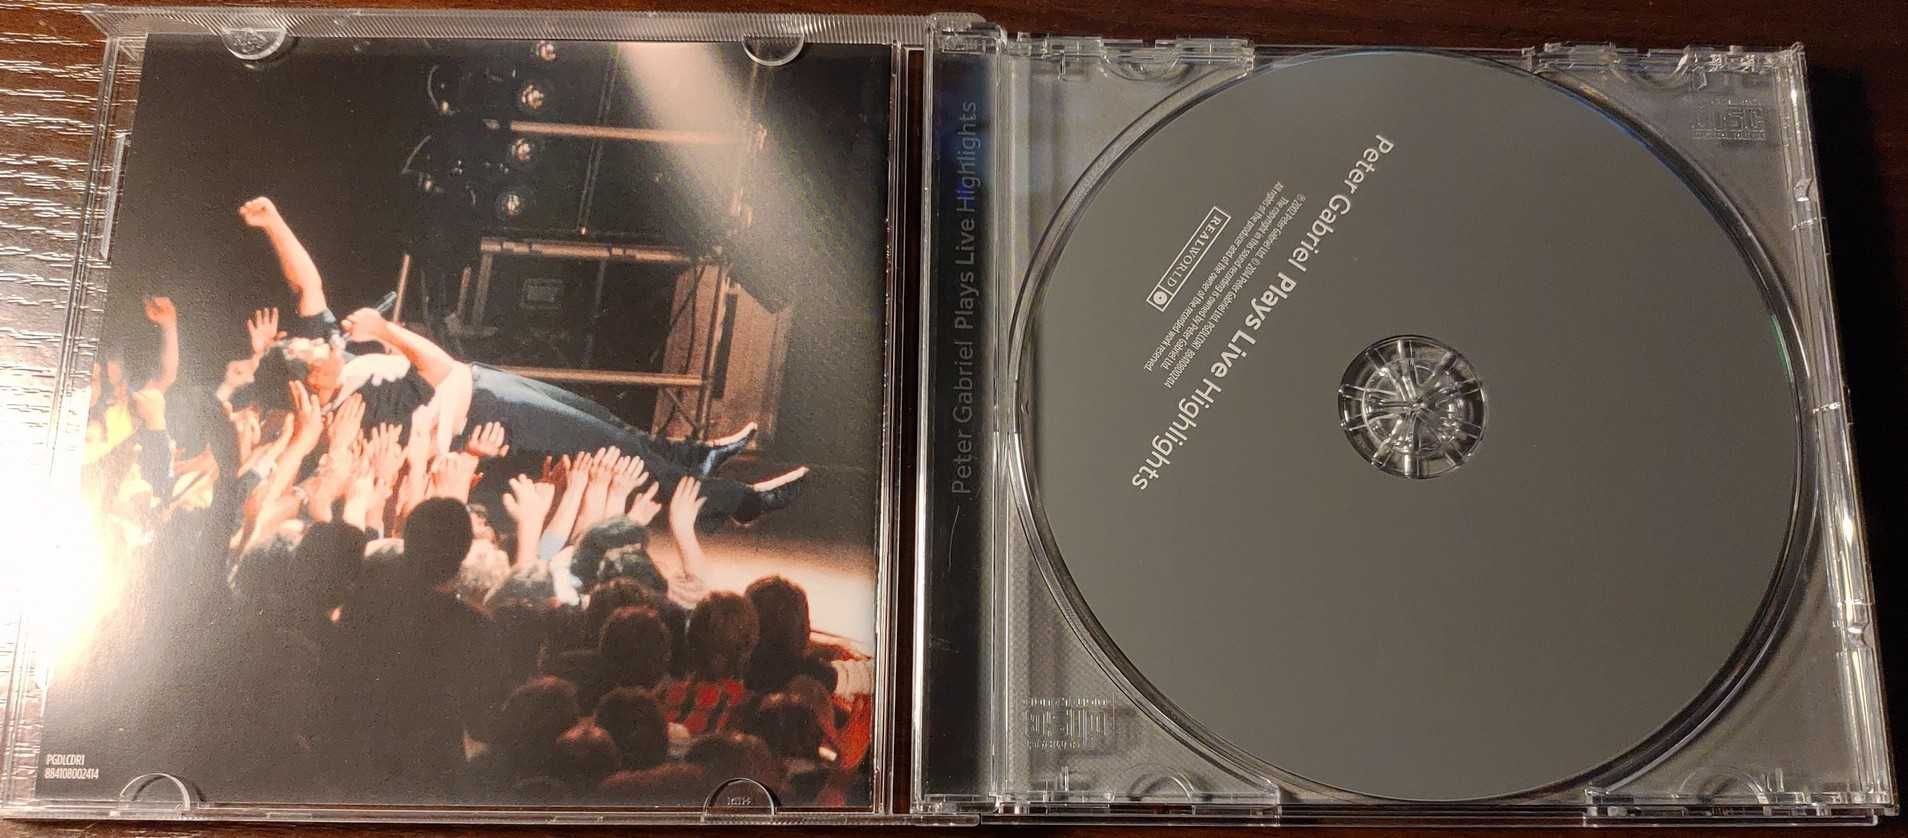 Peter Gabriel (Genesis) Plays Live CD